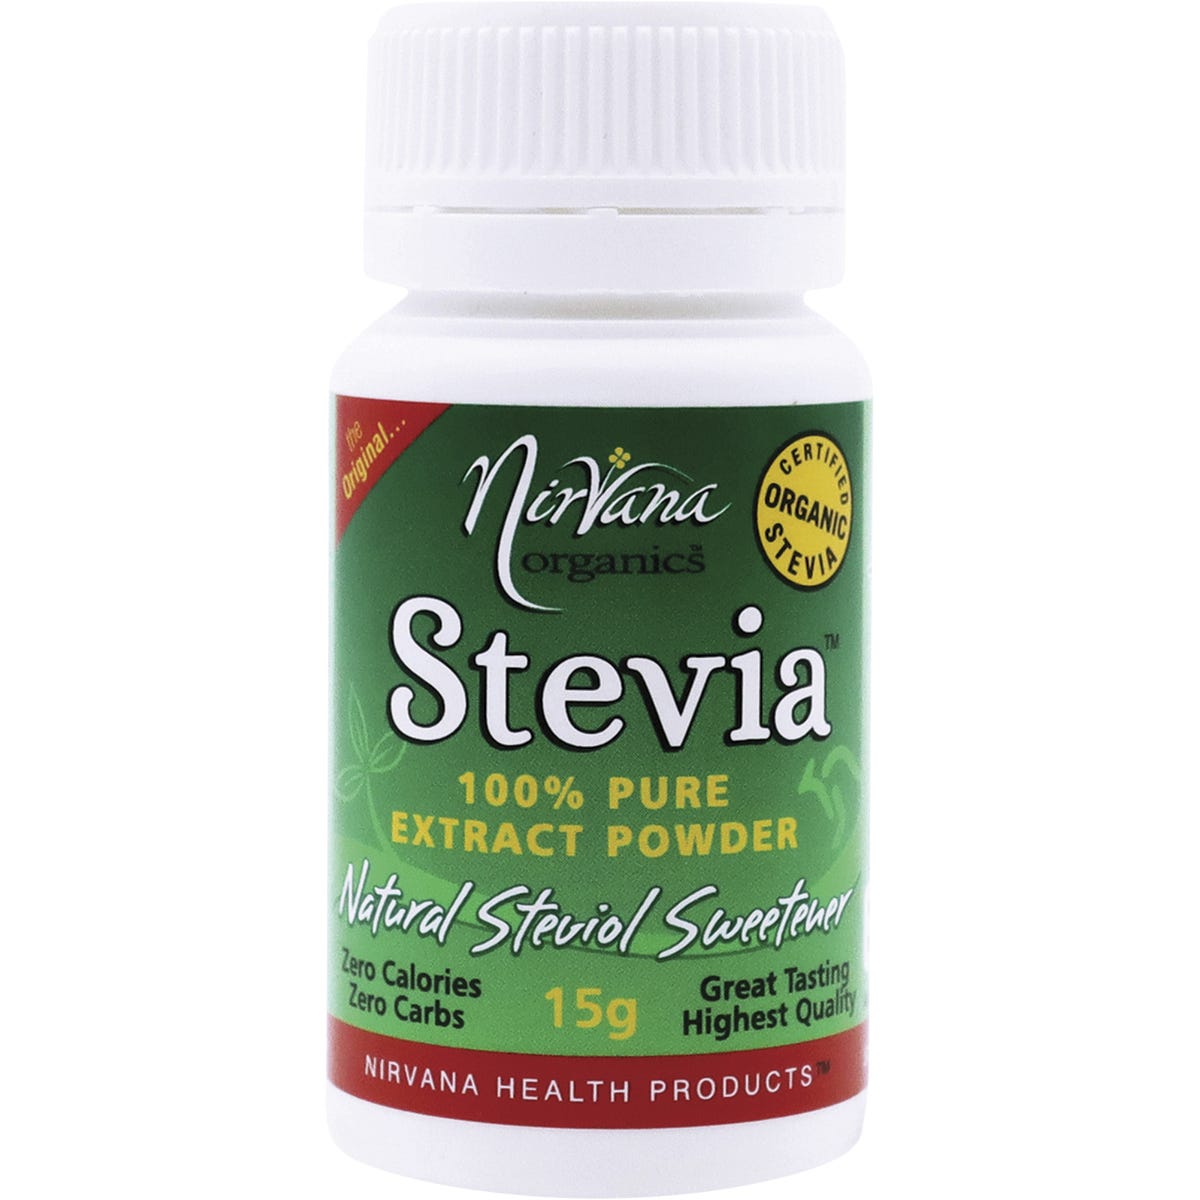 Stevia 100% Pure Extract Powder